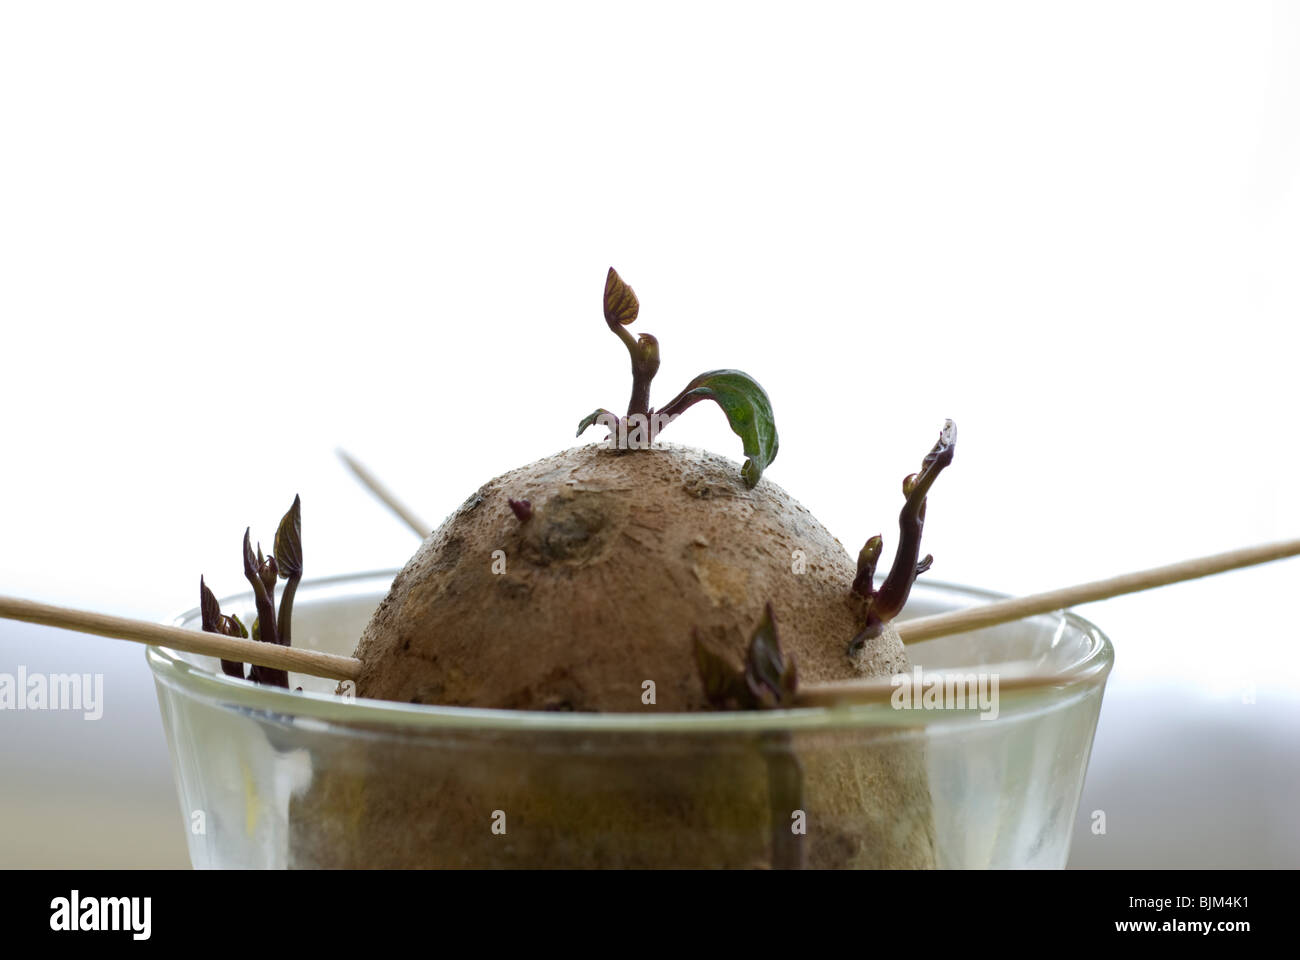 La patate douce en pleine croissance feuillets (Ipomoea batatas) - première étape, le développement. Banque D'Images